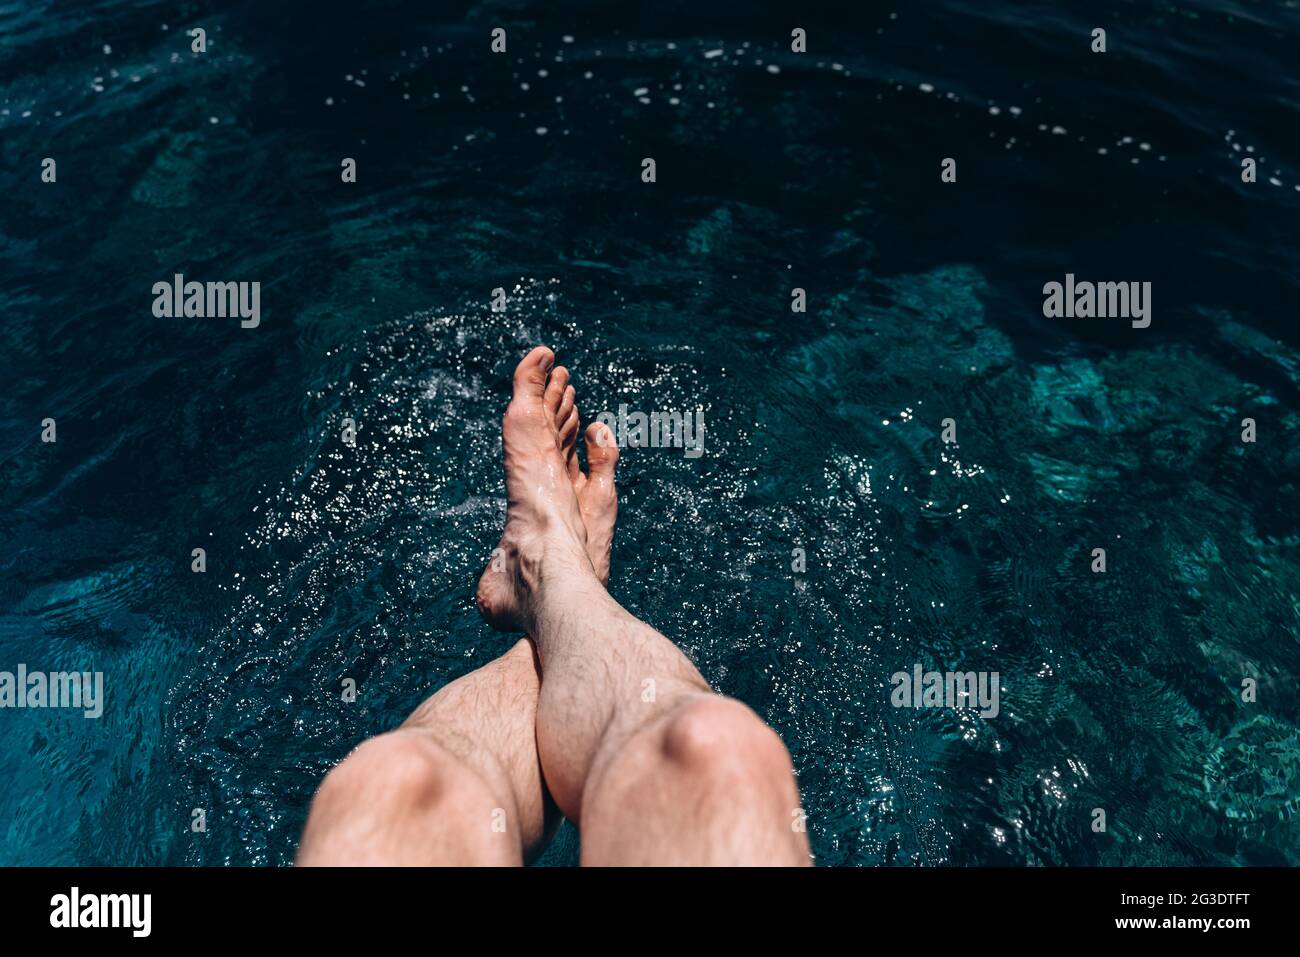 Gekreuzte, männliche Beine in das blaue Wasser abgesenkt. Entspannter Mann am Meer Stockfoto